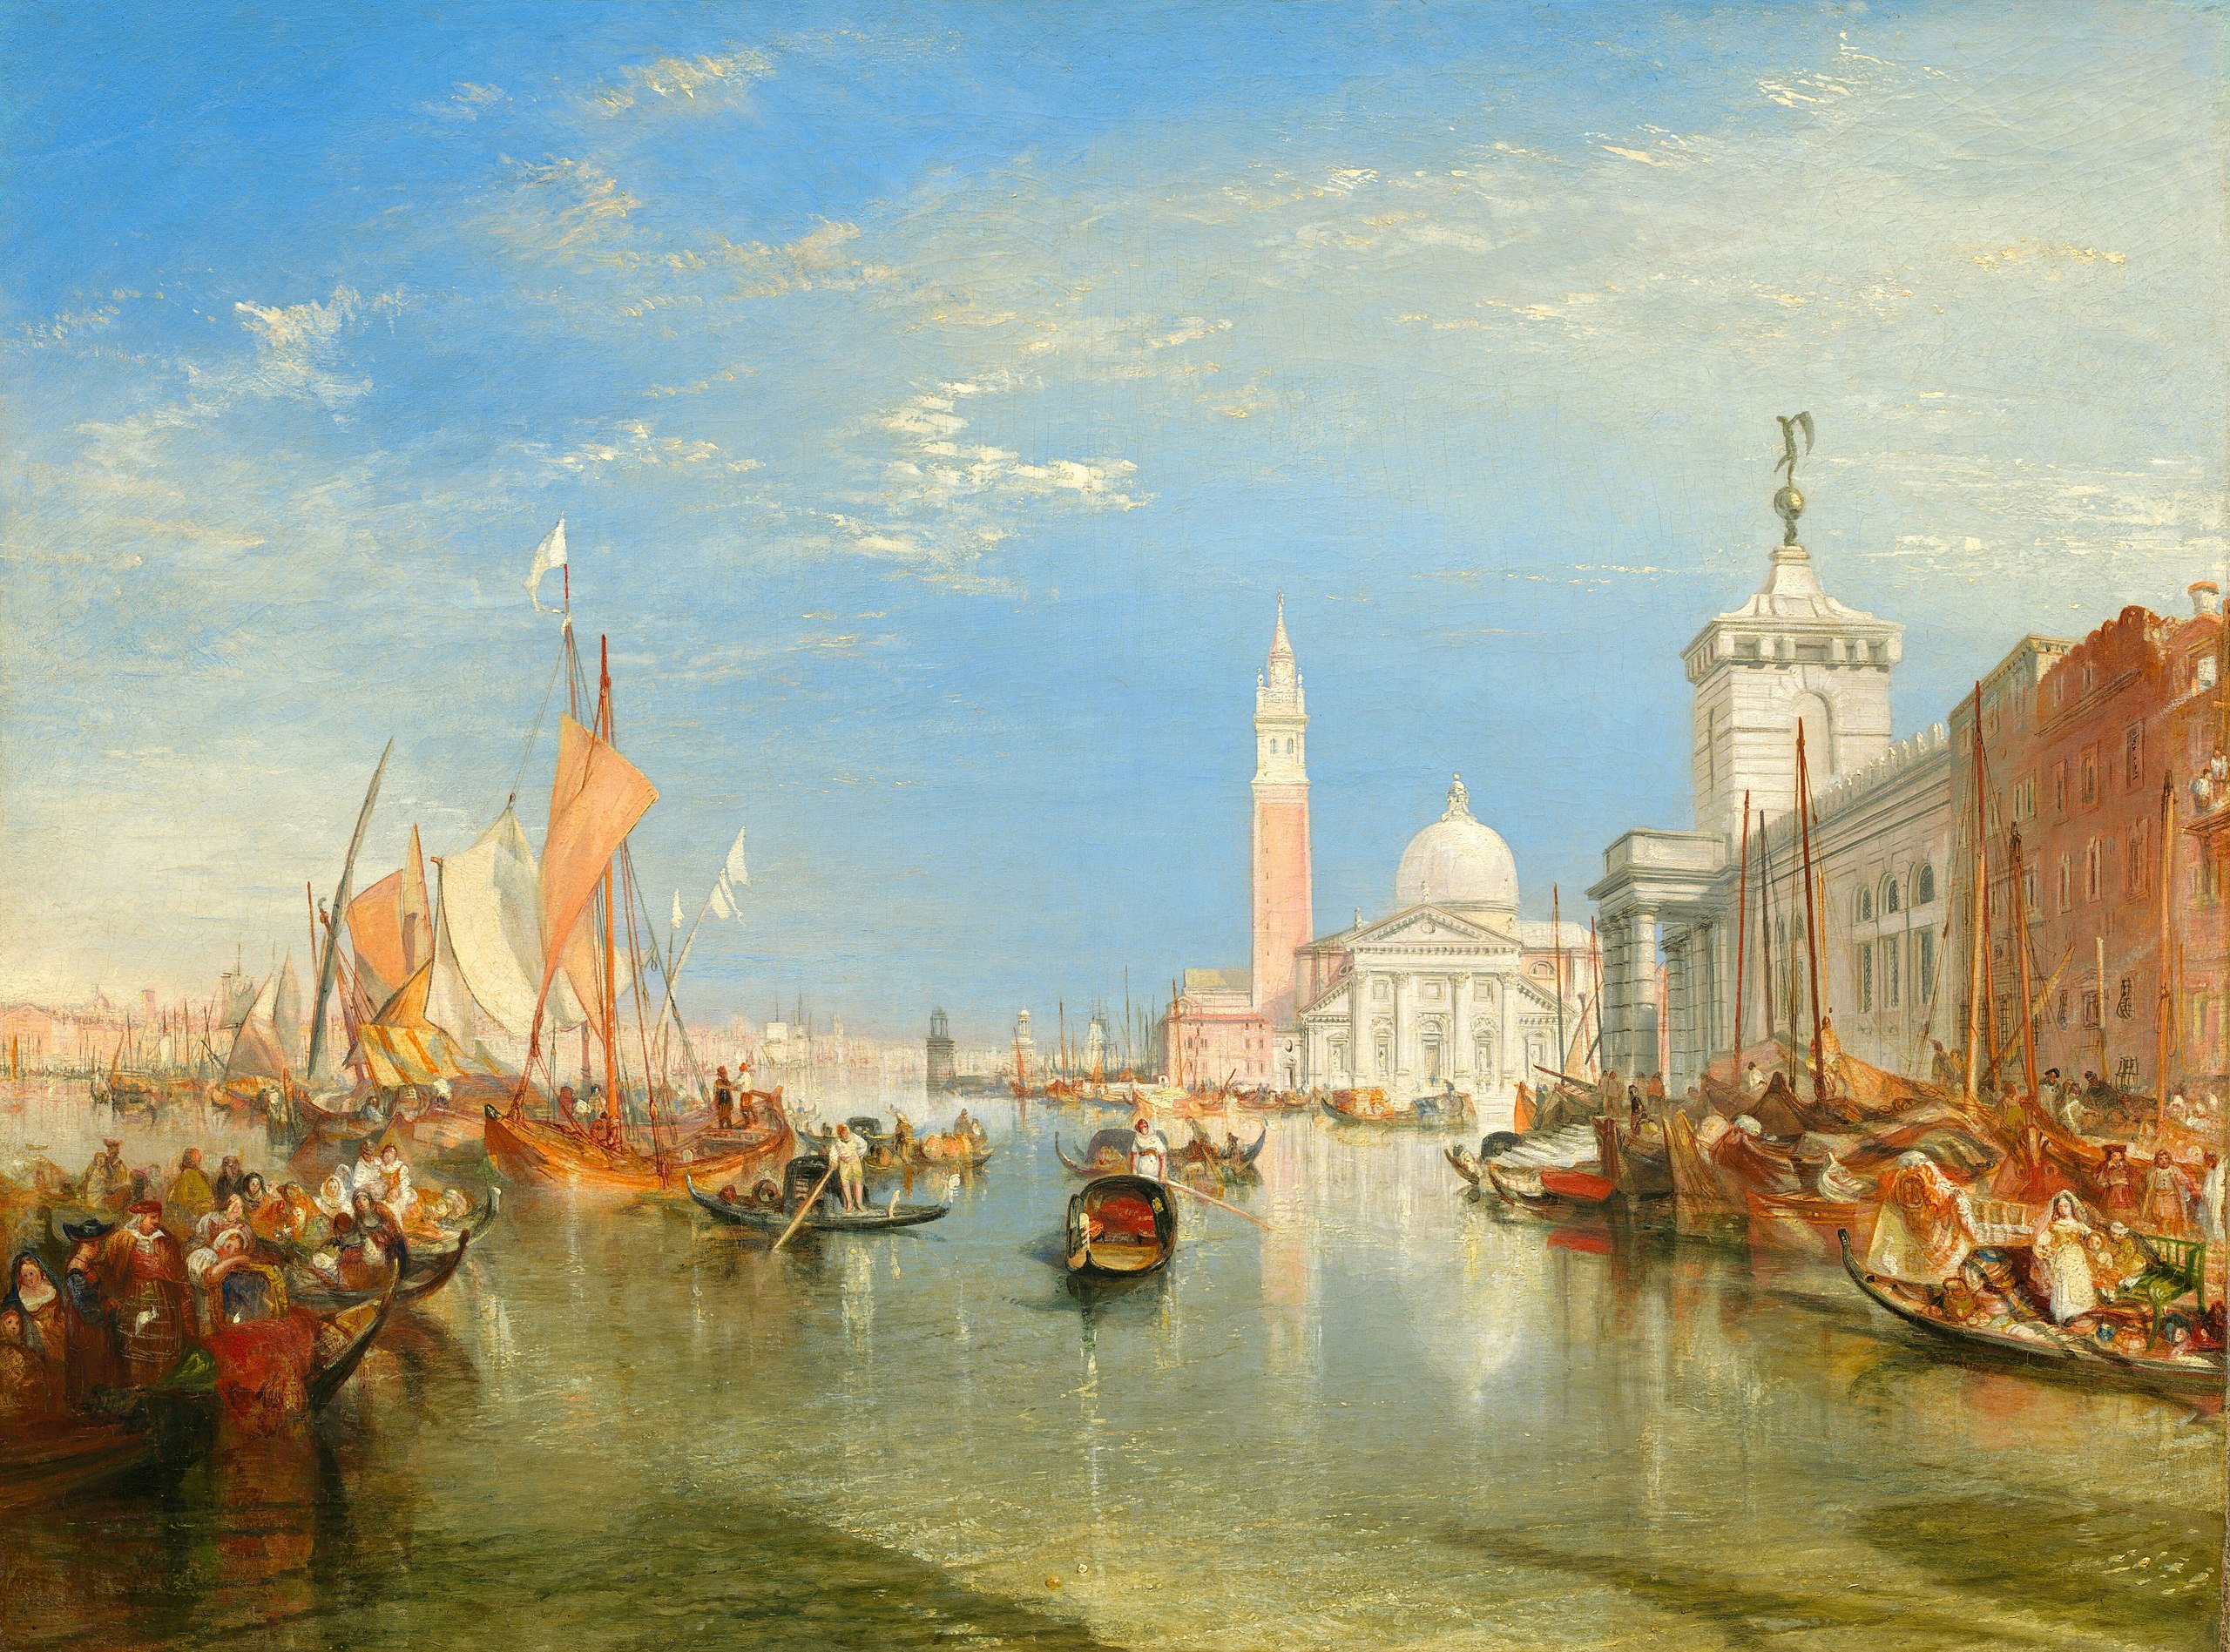 Venice: The Dogana and San Giorgio Maggiore by Joseph Mallord William Turner - 1834 - 91.5 x 122 cm National Gallery of Art